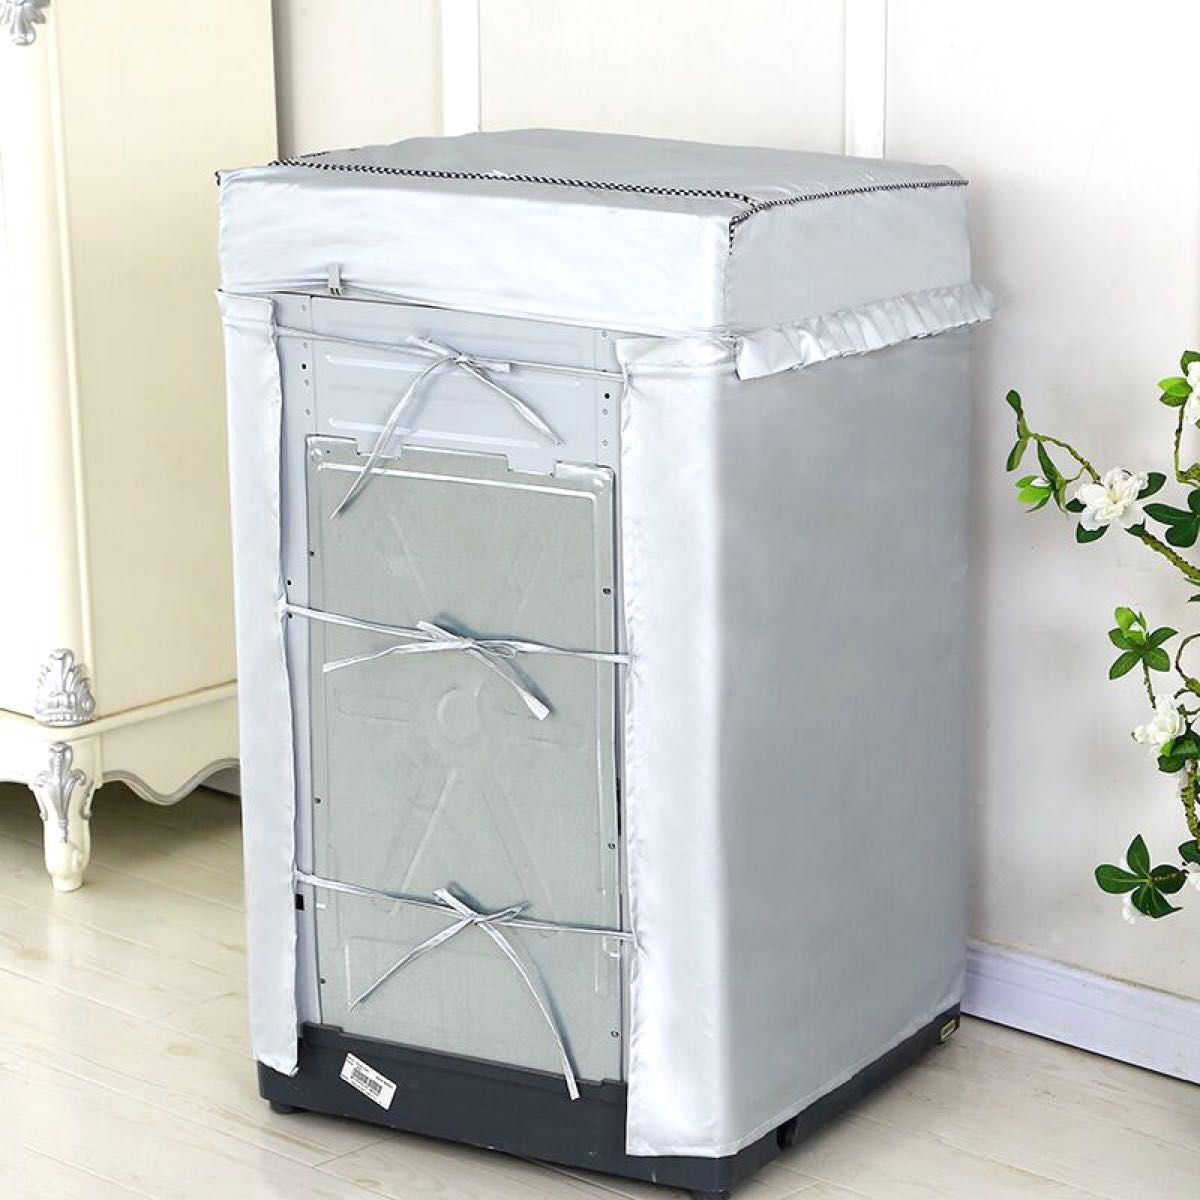 洗濯機カバー Sサイズ シルバー 耐用 日焼け劣化防止 防汚 防水性